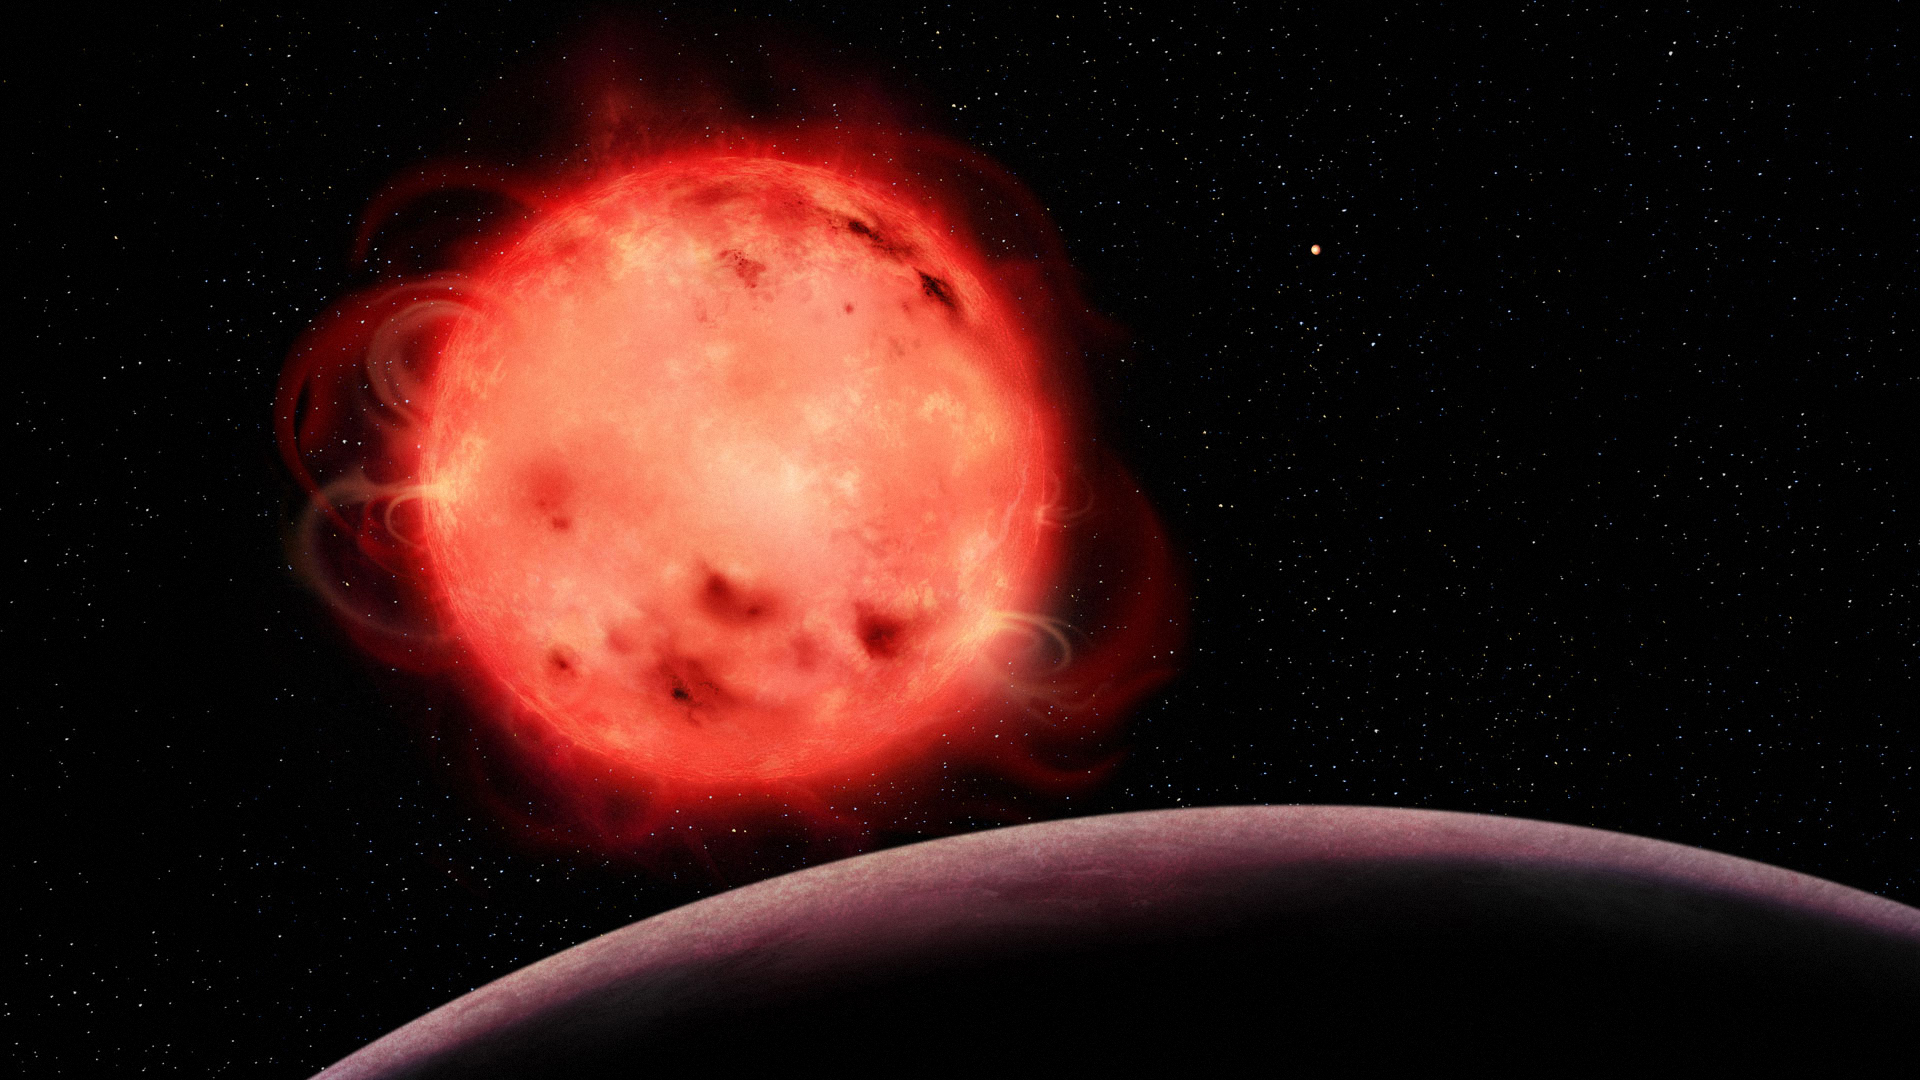 Cette représentation artistique de l'étoile naine rouge TRAPPIST-1 met en évidence sa nature très active. L'étoile semble avoir de nombreuses taches stellaires (des régions plus froides de sa surface, semblables aux taches solaires) et des éruptions. L'exoplanète TRAPPIST-1 b, la planète la plus proche de l'étoile du système, est visible au premier plan, sans atmosphère apparente. L'exoplanète TRAPPIST-1 g, l'une des planètes de la zone habitable du système, est visible à l'arrière-plan, à droite de l'étoile. Le système TRAPPIST-1 contient sept exoplanètes de tailles semblables à celle de la Terre. (Crédit : Benoît Gougeon, Université de Montréal)